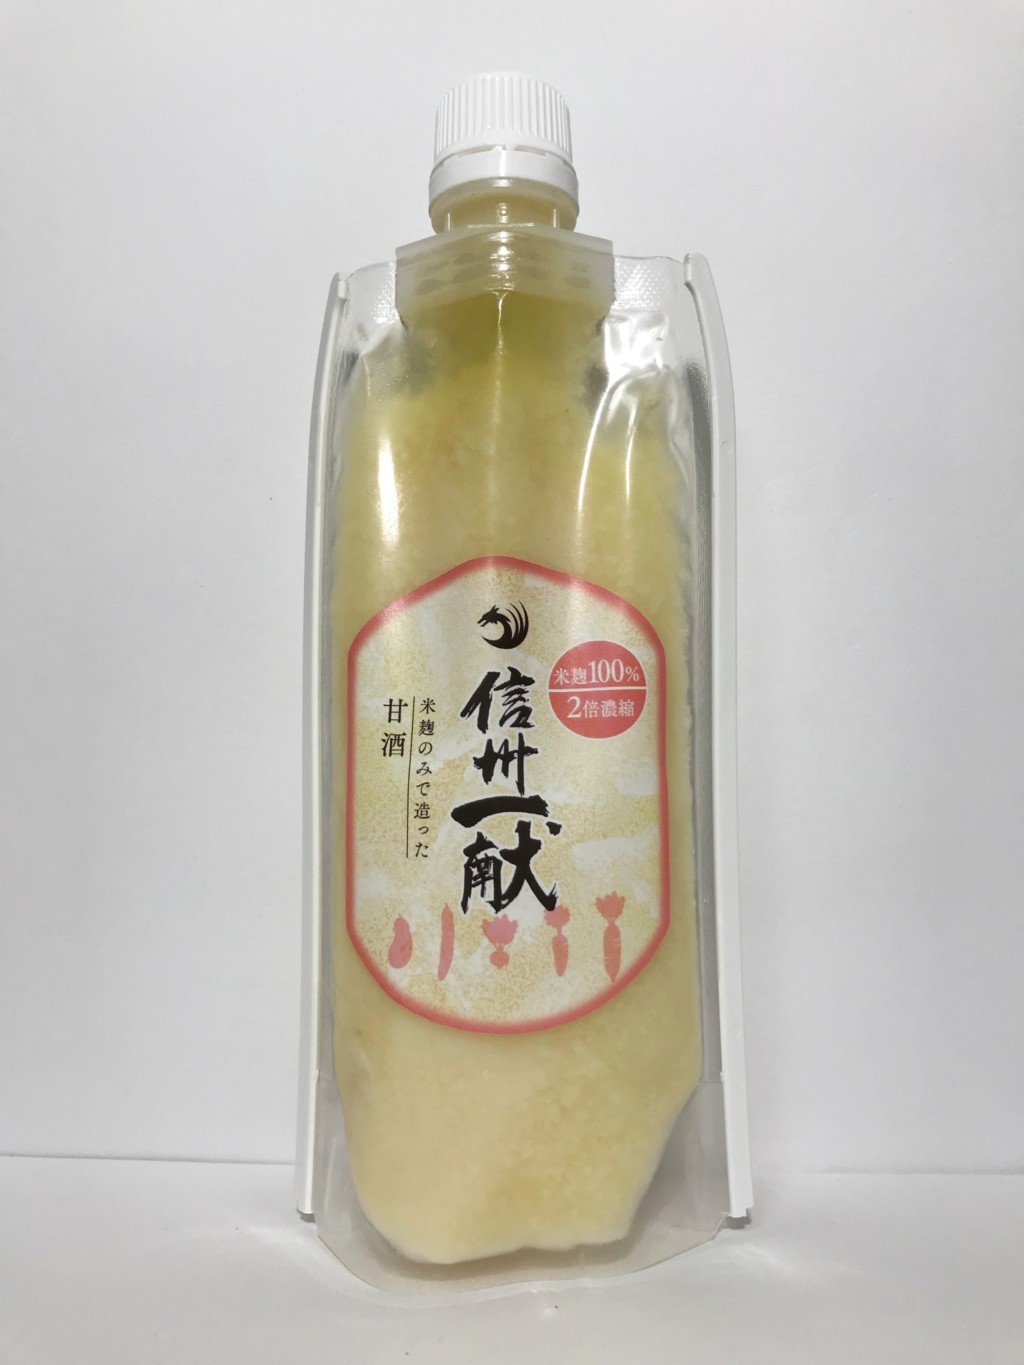 信州一献の濃縮タイプの米麹甘酒『米麹のみで造った甘酒』